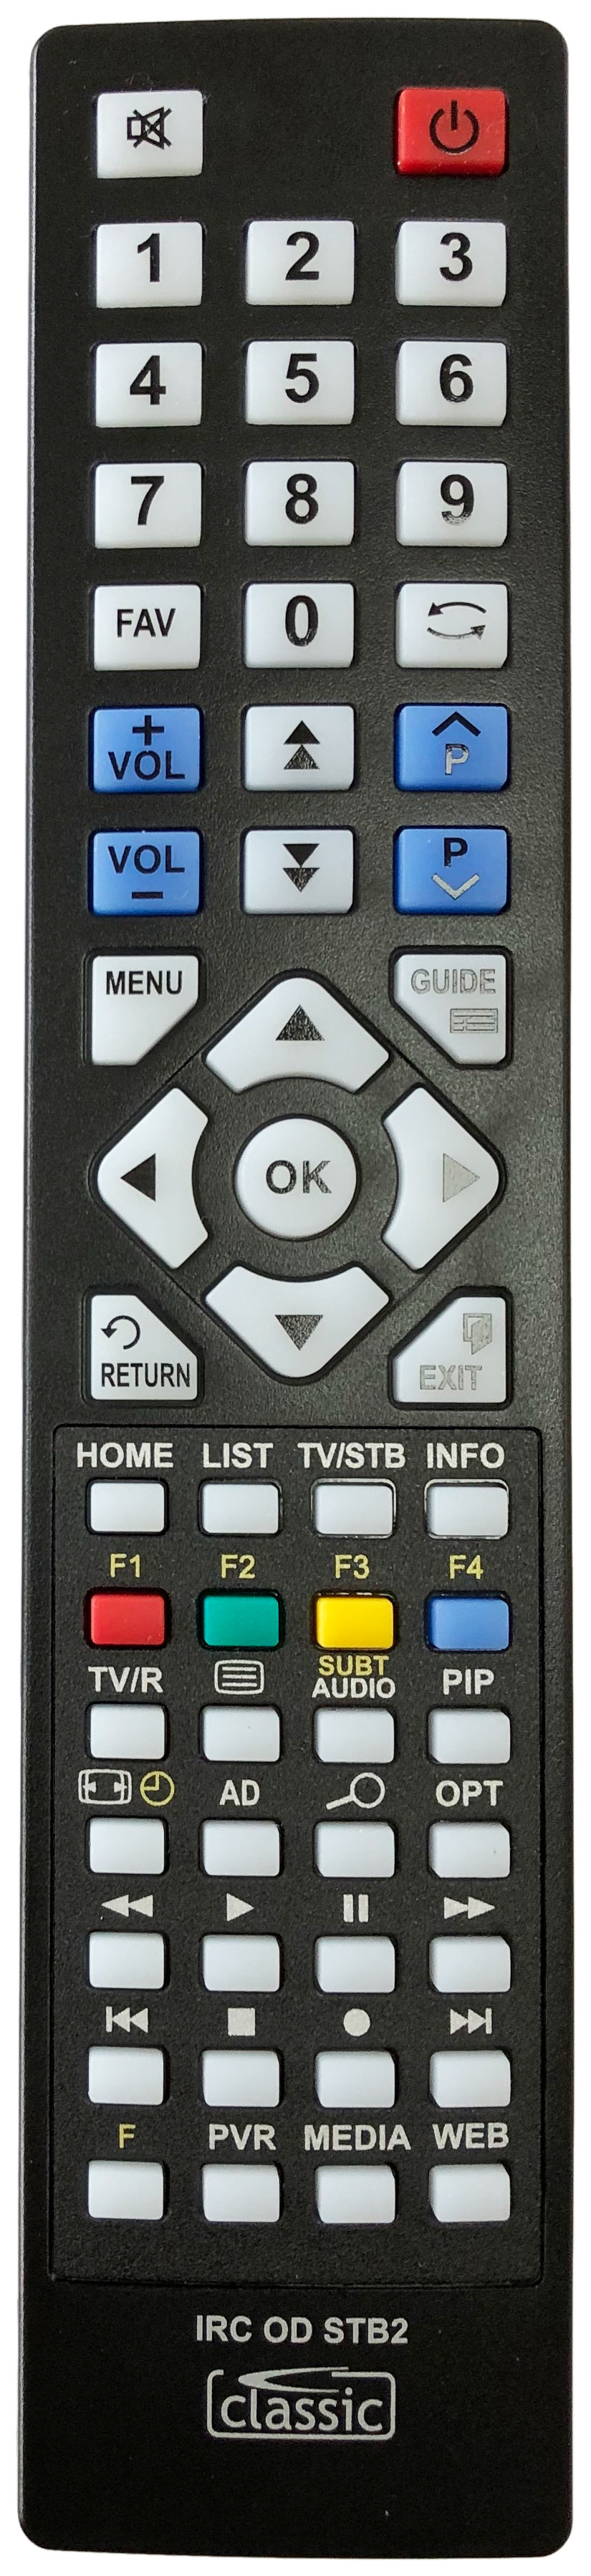 Humax 03202-00137 Remote Control